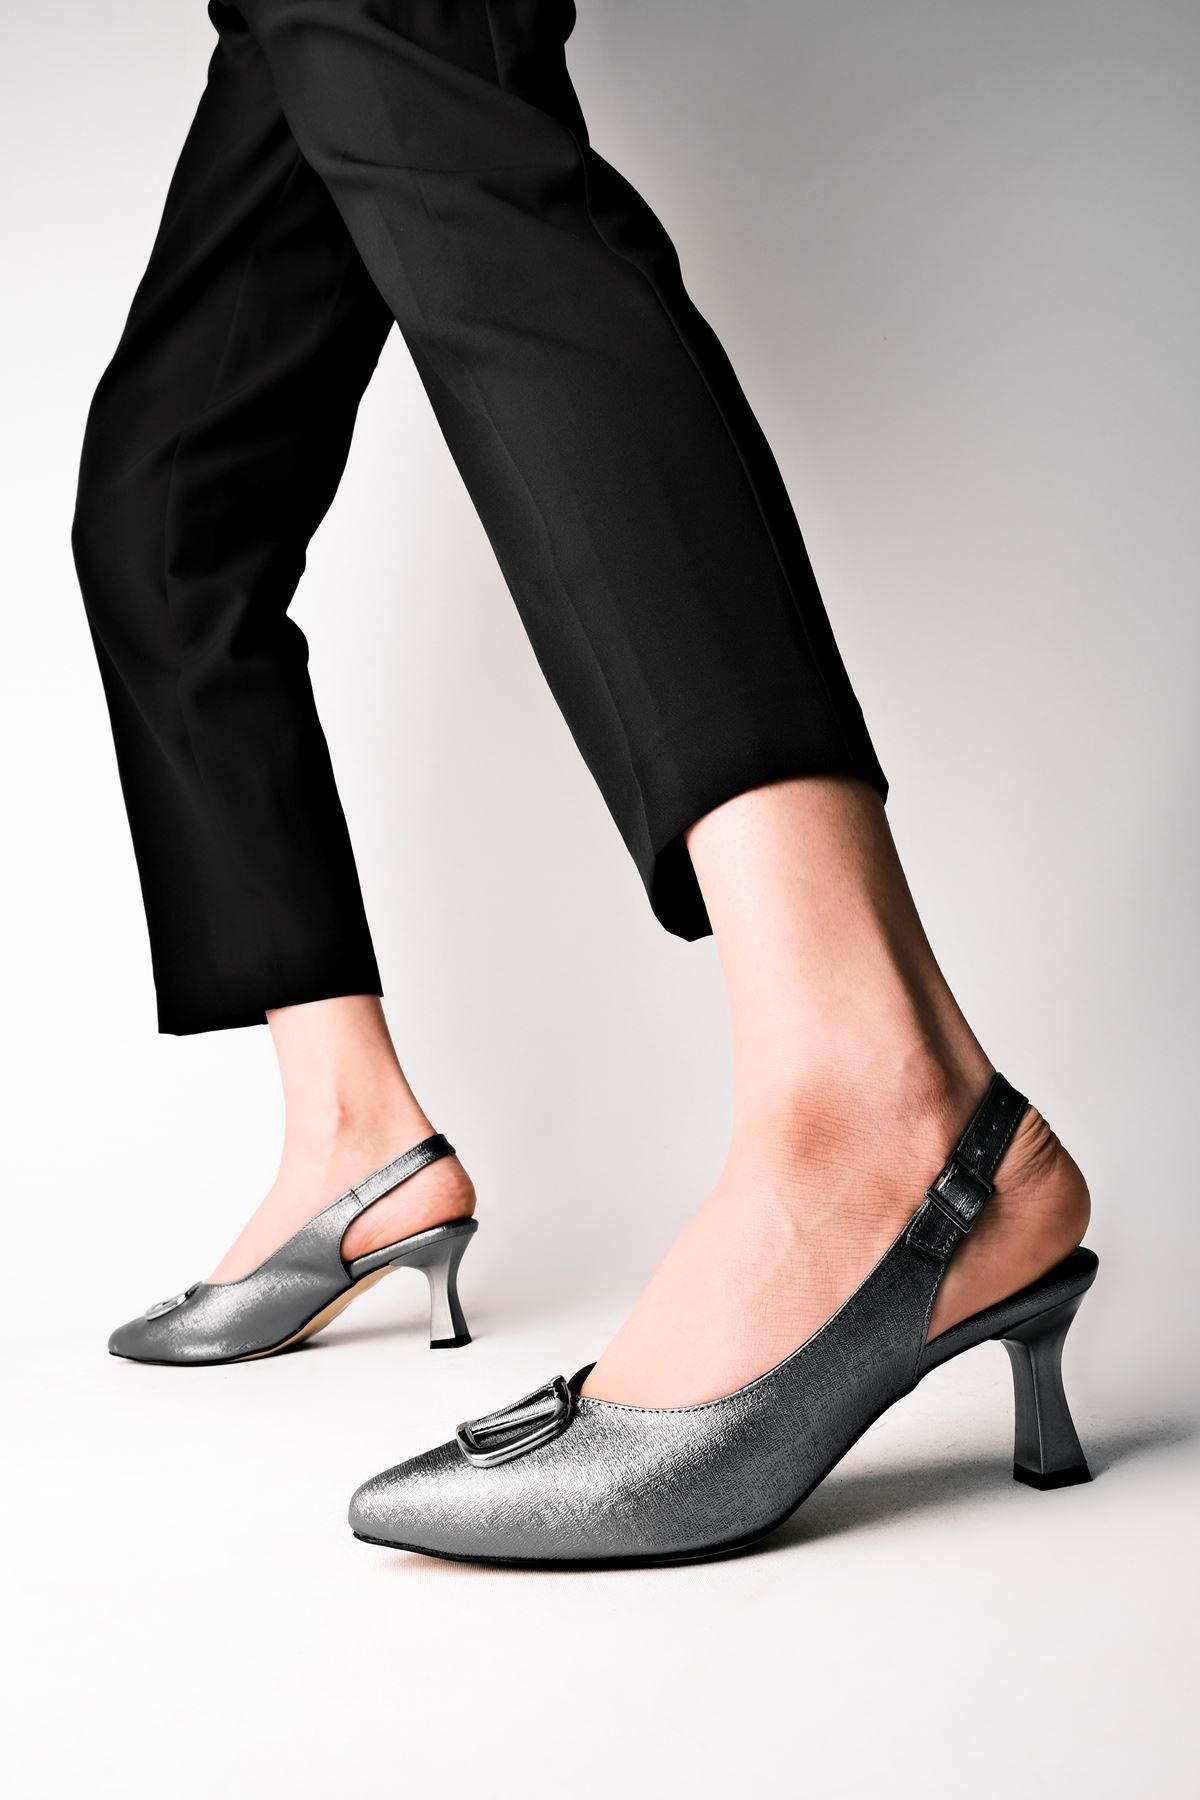 LAL SHOES & BAGS Taylor V Metal Arkası Açık Kadın Topuklu Ayakkabı-ANTRASİT